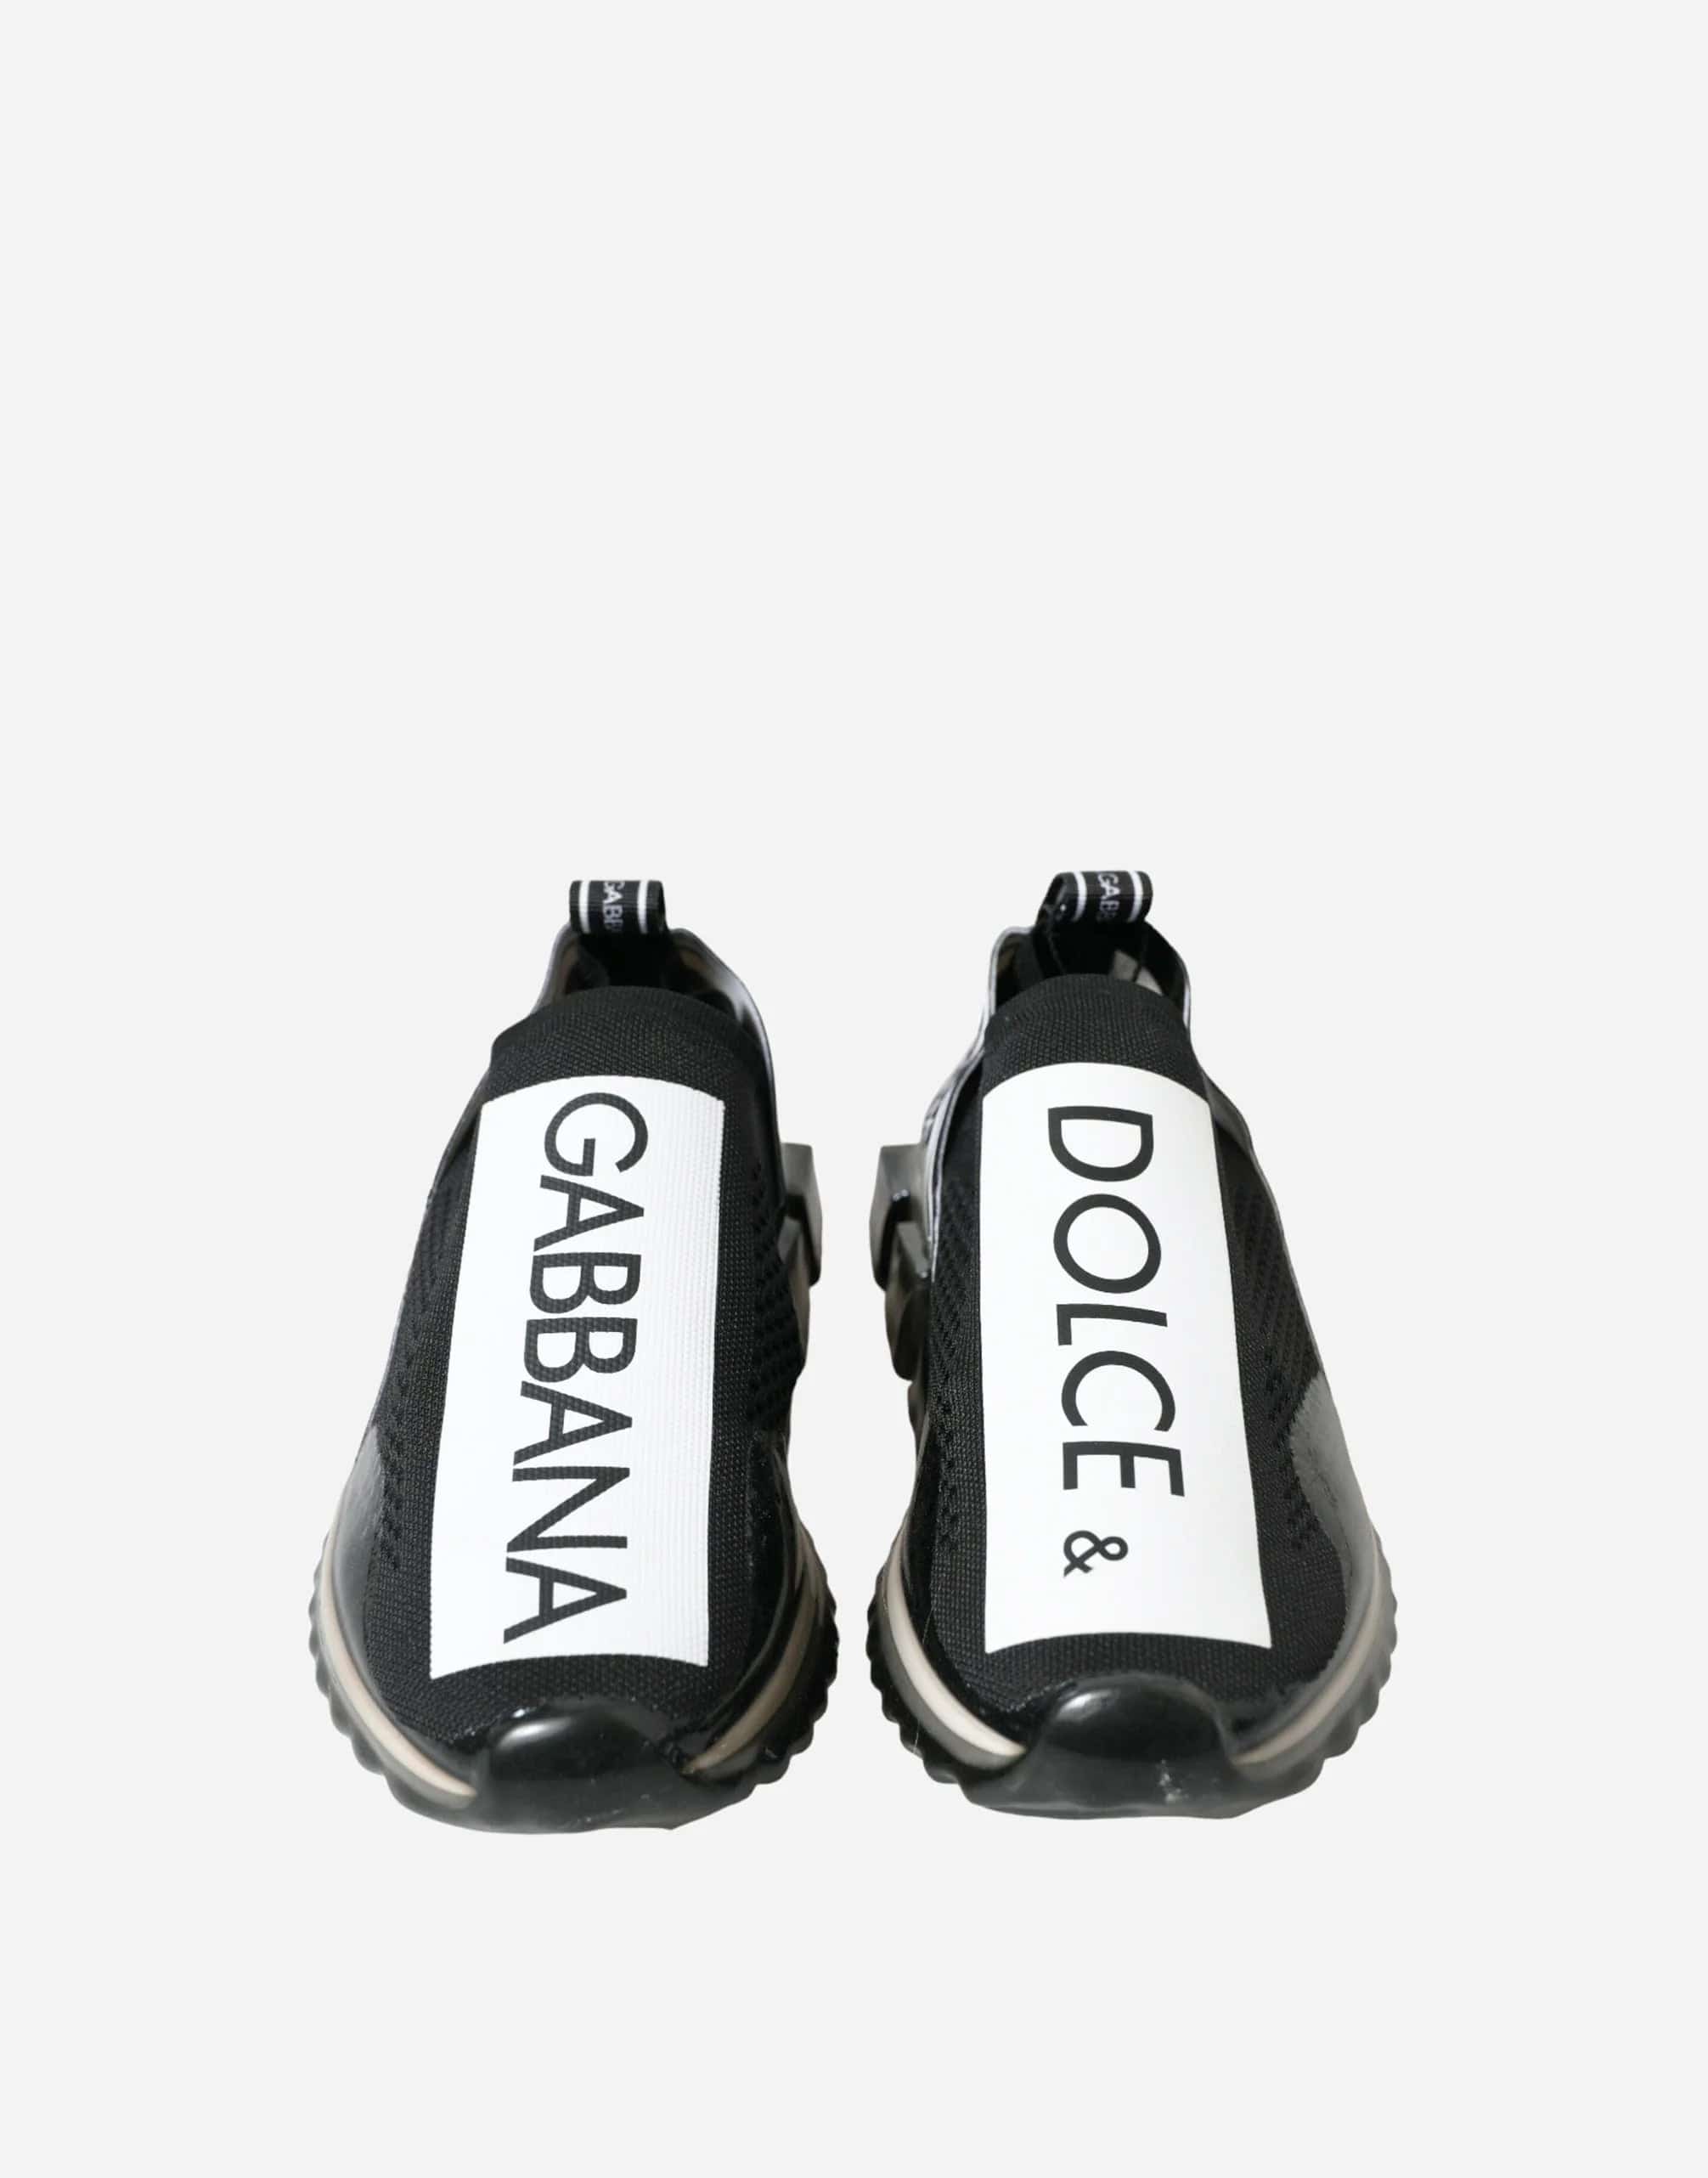 Dolce & Gabbana Slip On Sorrento Sneakers